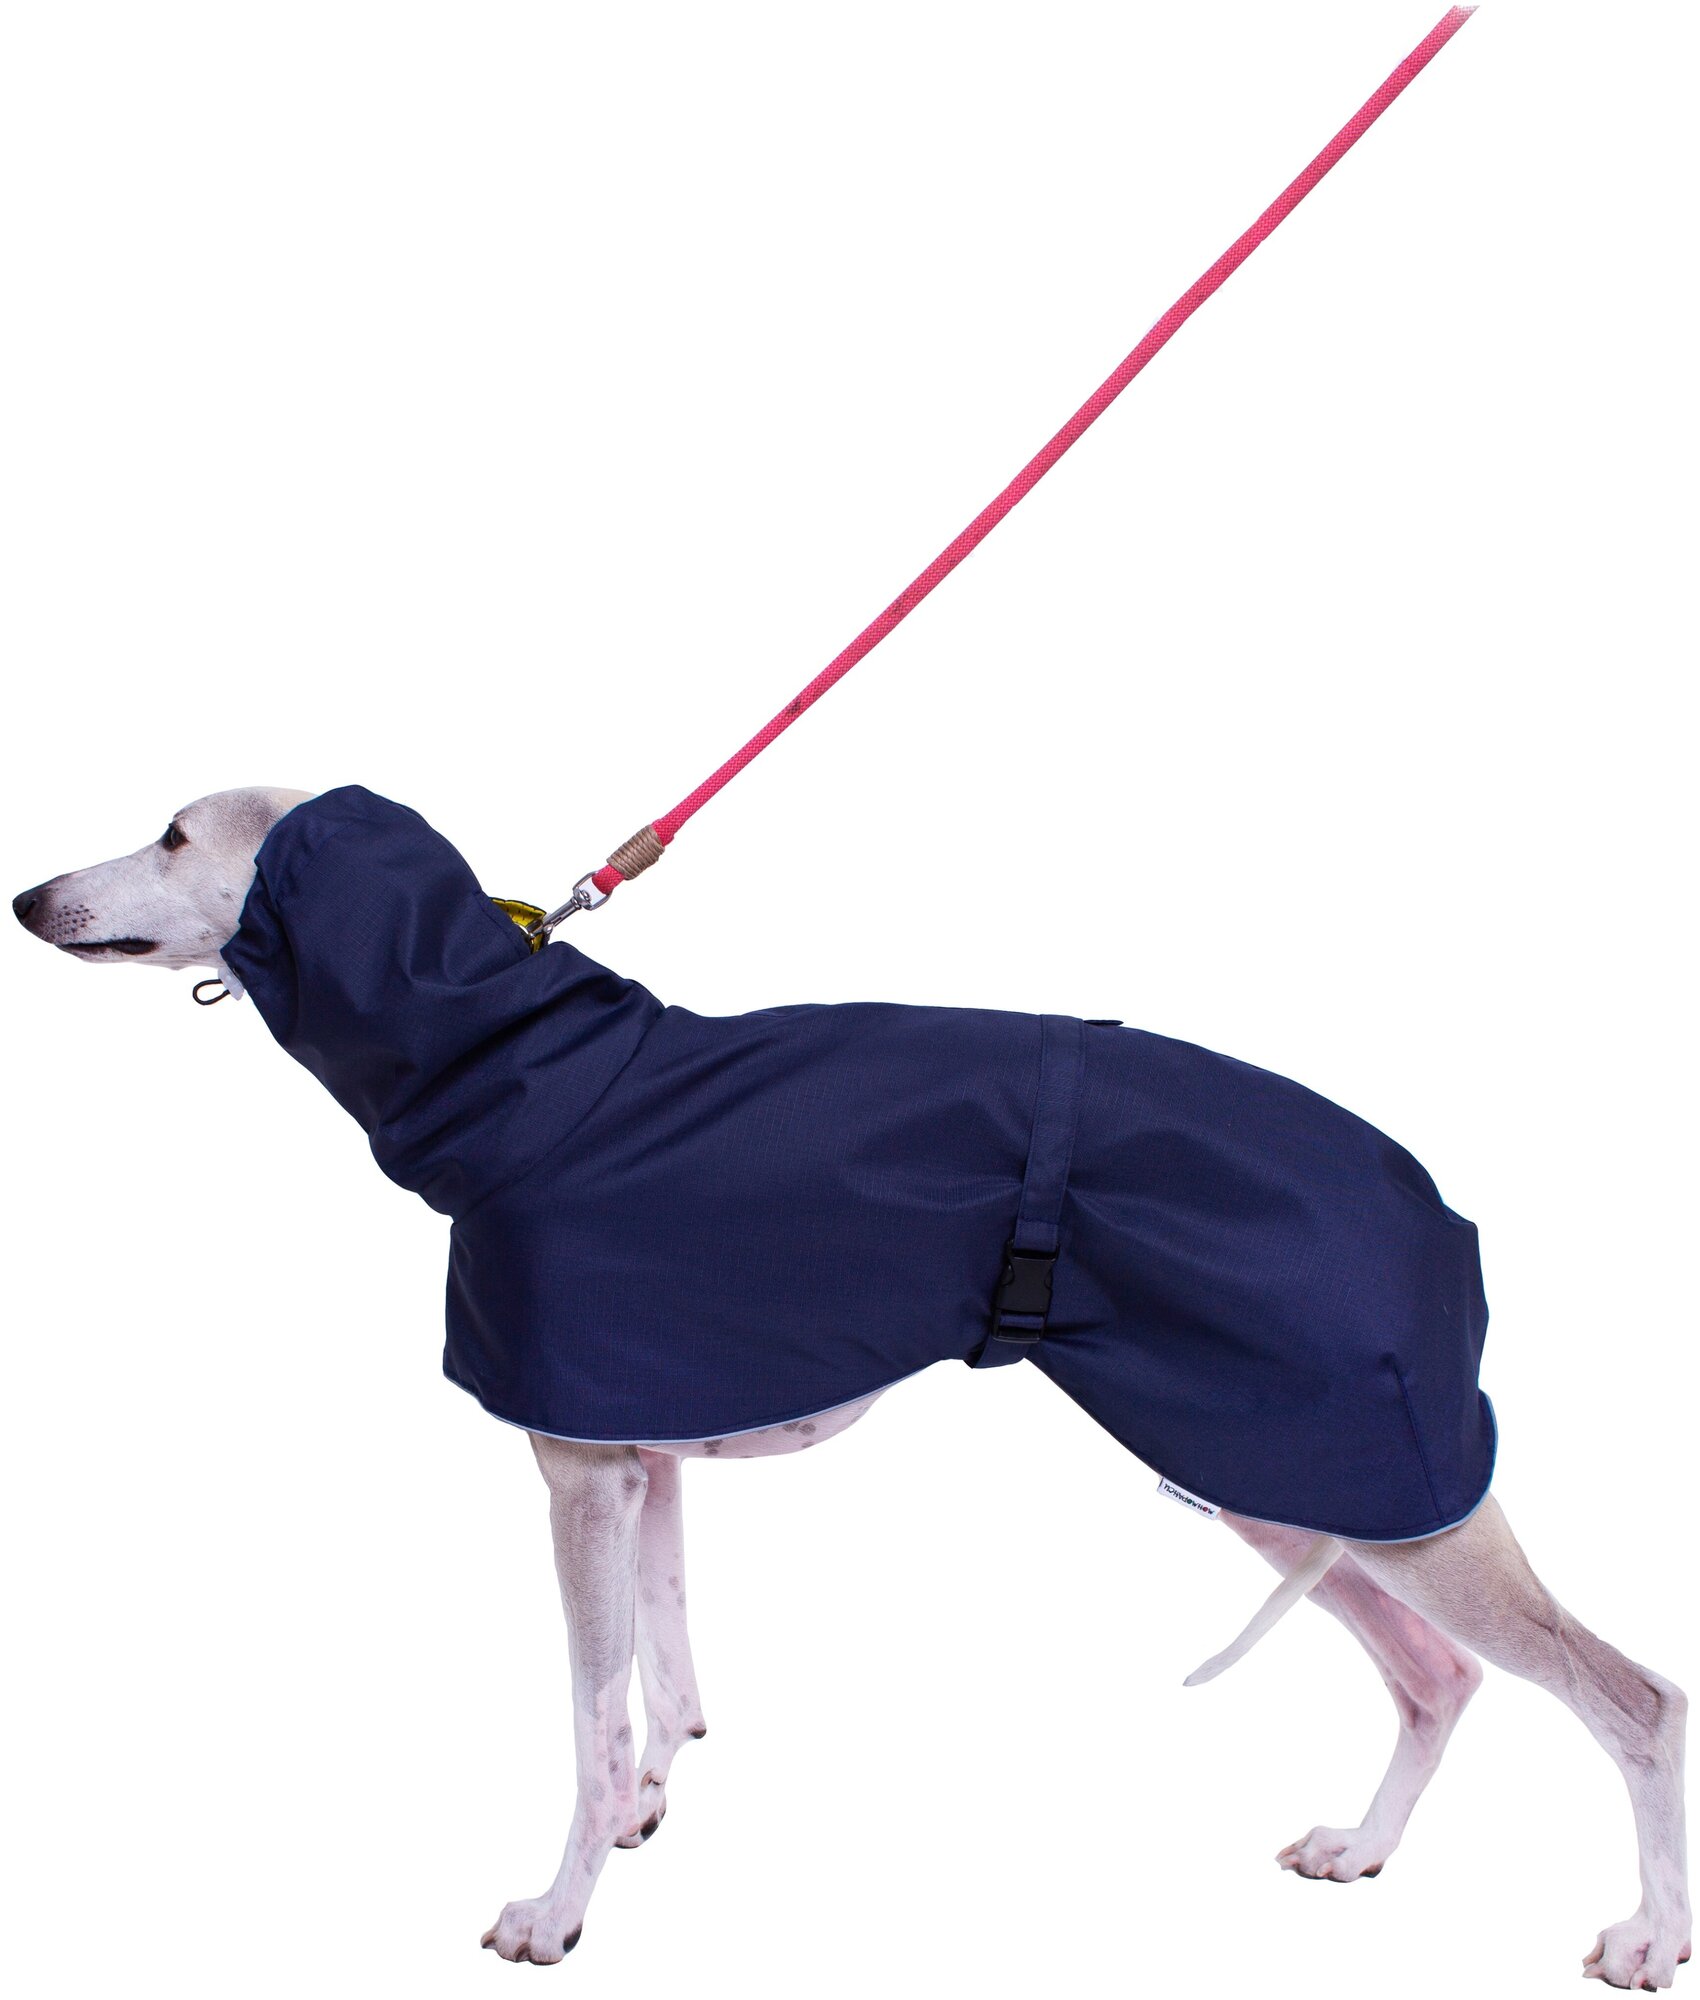 Дождевик для собак породы Левретка, цвет: синий, желтый, размер S3 . Дождевик для бесхвостых собак и с низкоопущенным хвостом